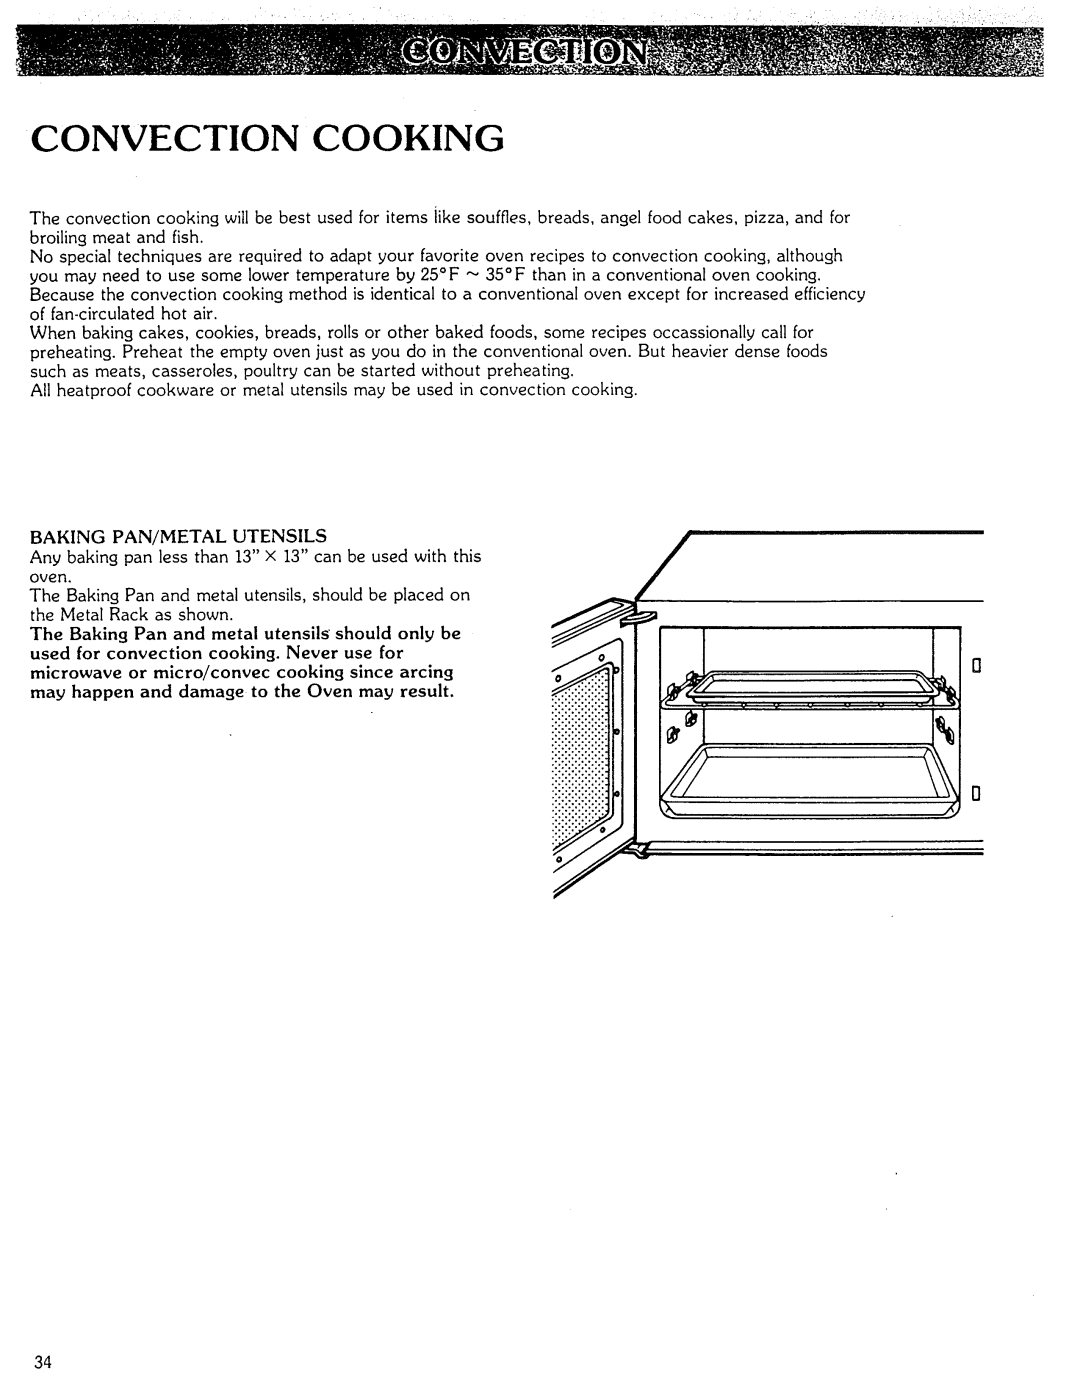 Kenmore Microwave Oven manual Convection Cooking, iiiiiiiiiiiiiiii 